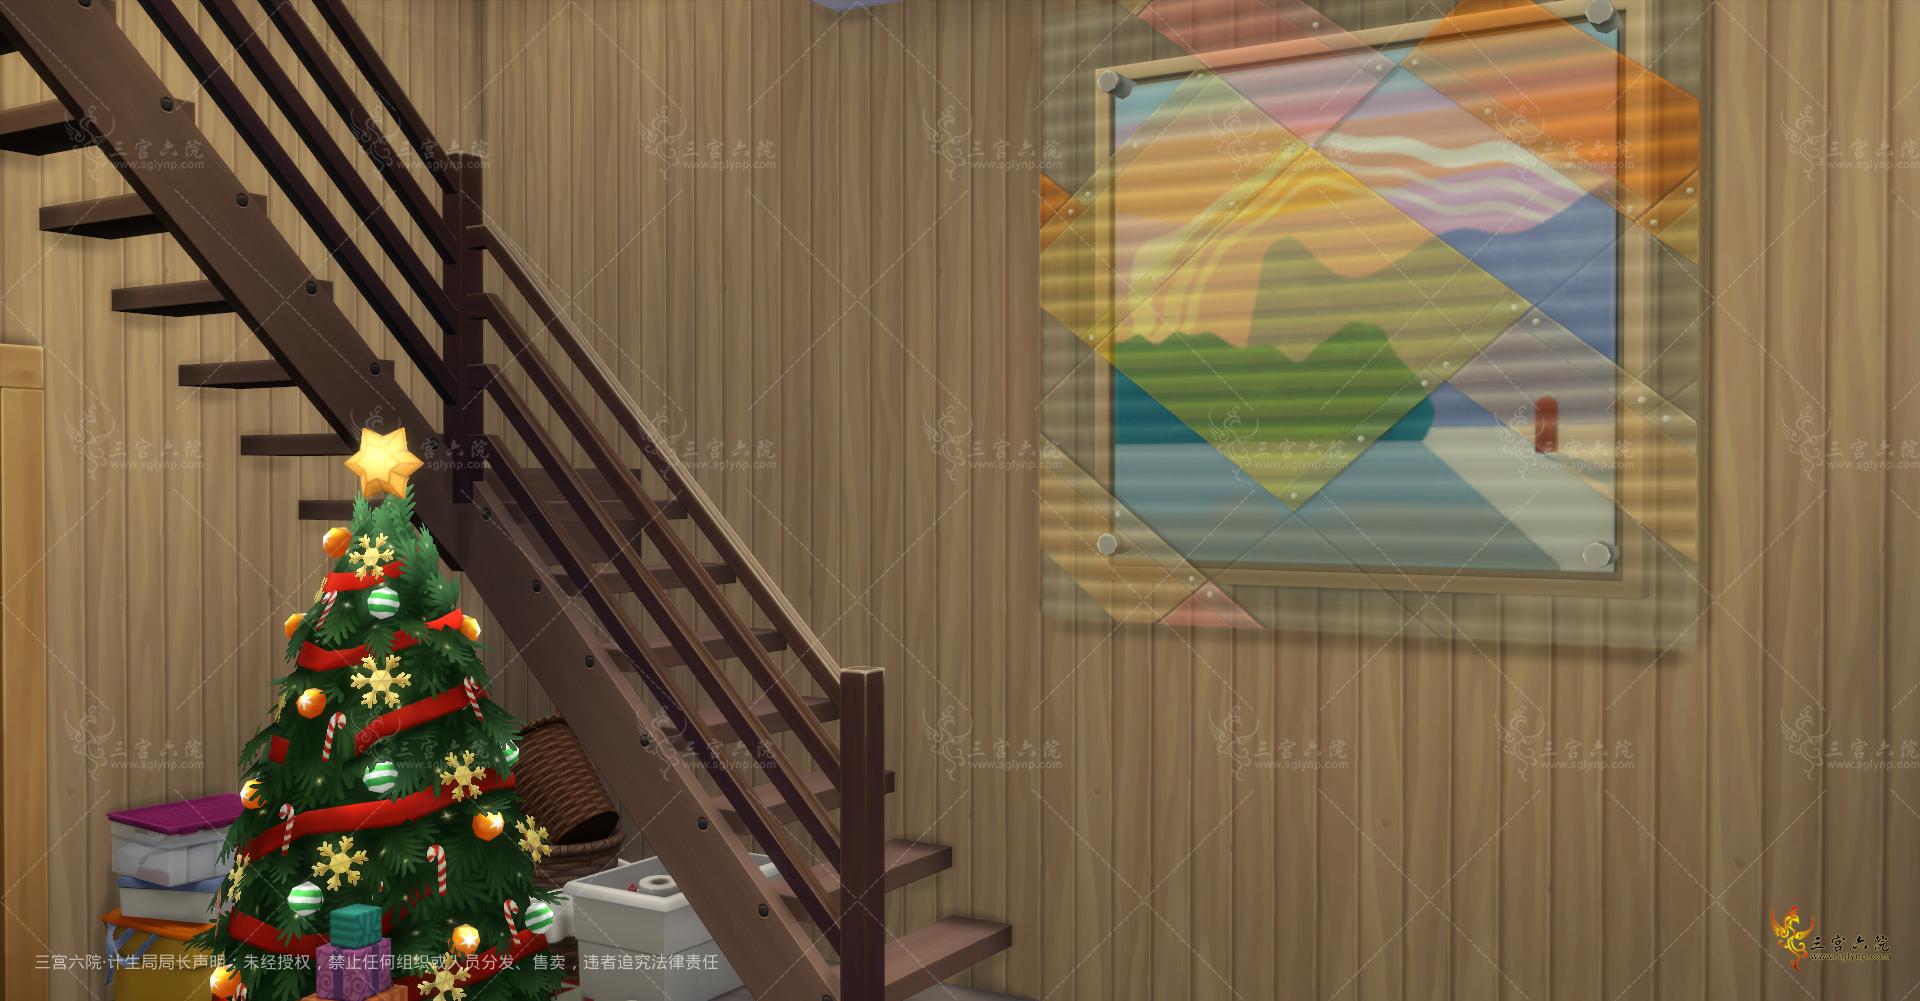 Sims 4 Screenshot 2022.01.01 - 13.11.29.87.png